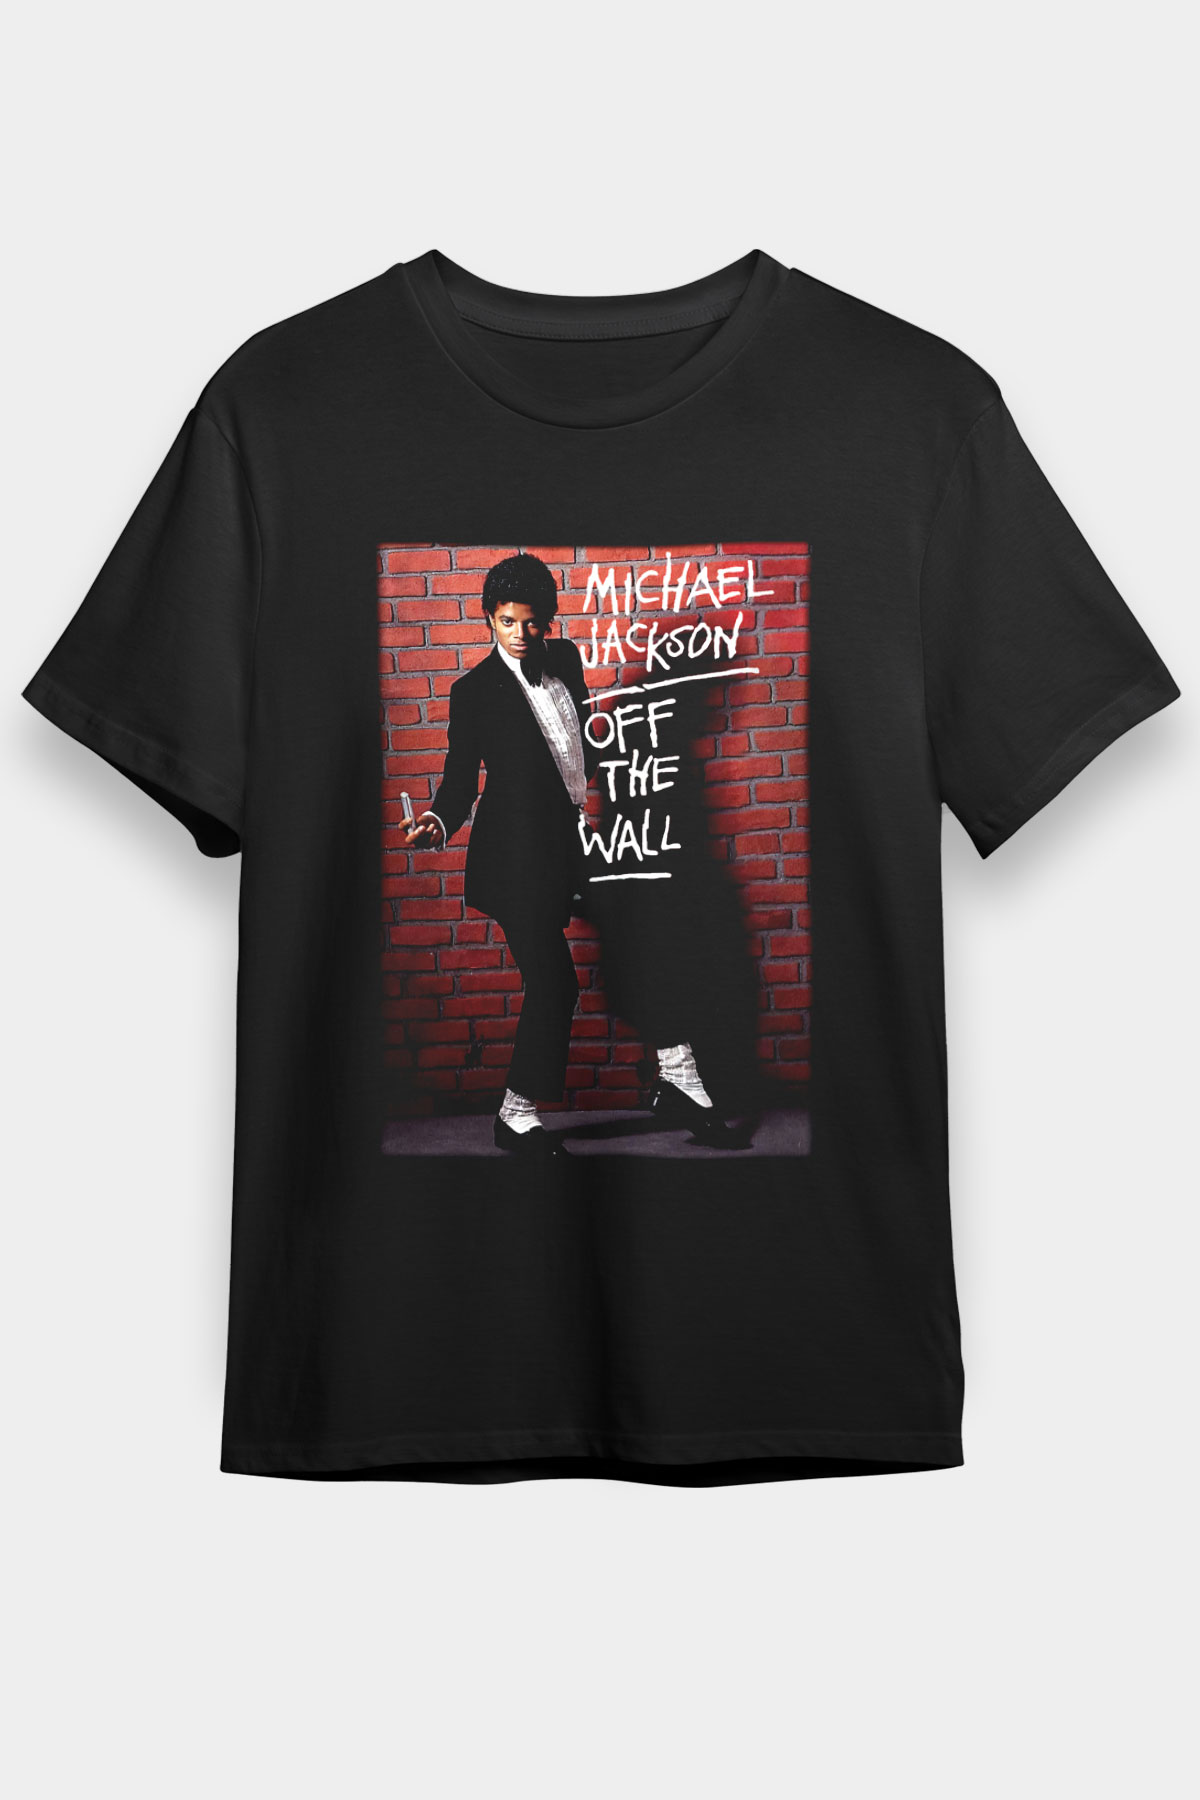 Michael Jackson T shirt,Pop Music Tshirt 10/